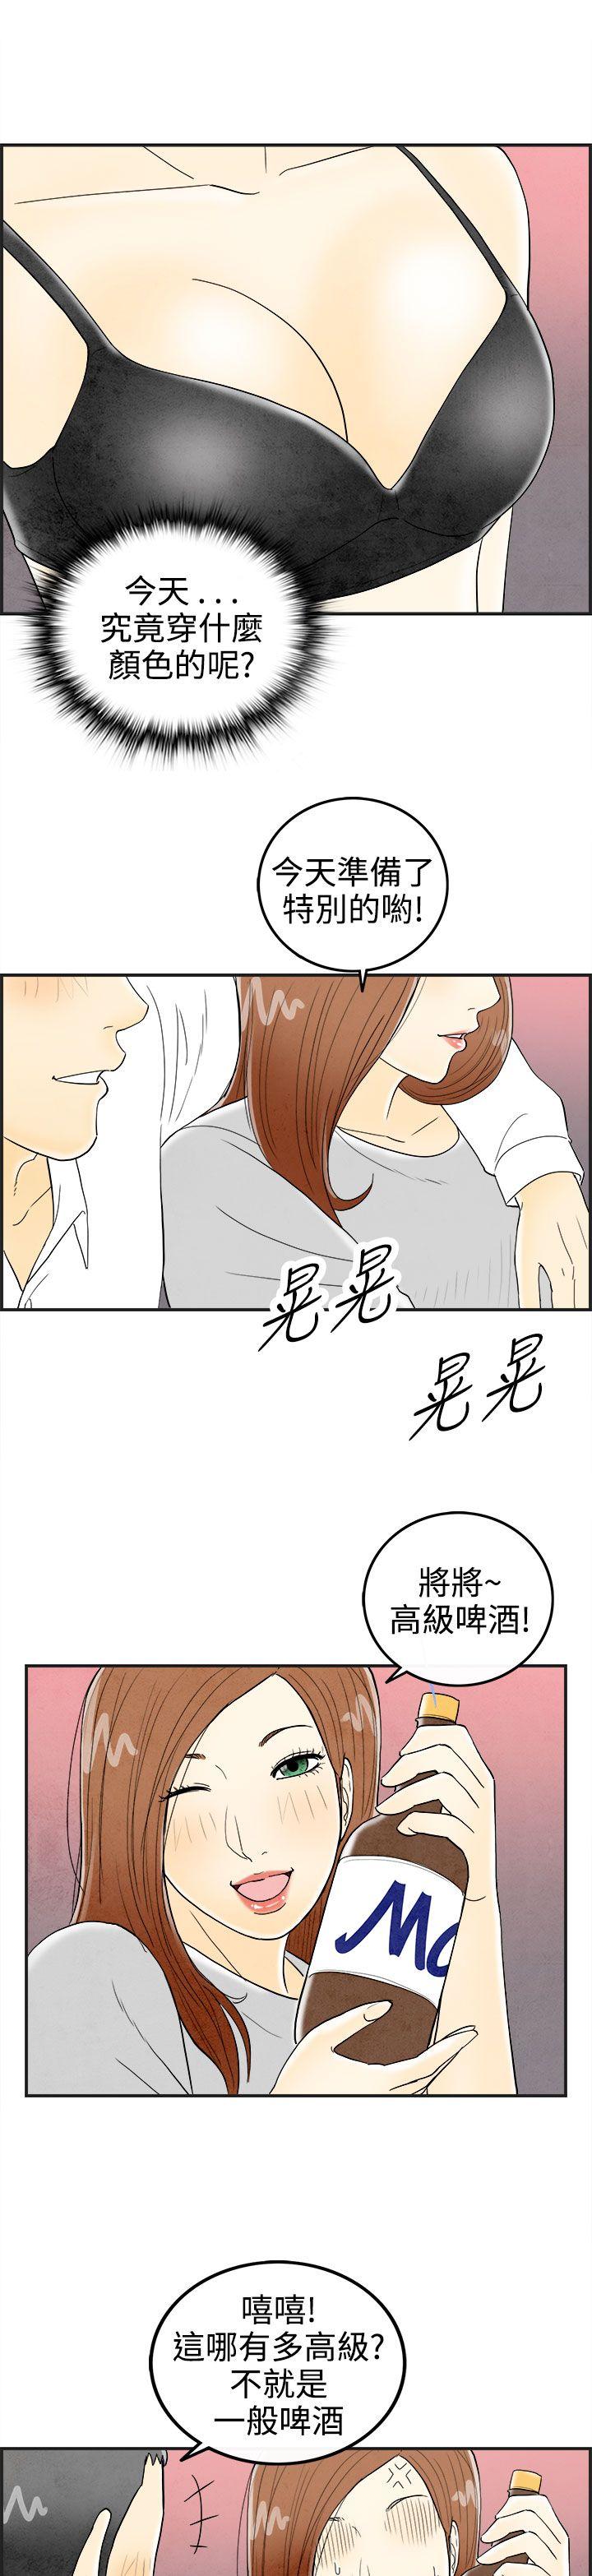 韩国污漫画 離婚報告書(完結) 第31话-迷恋角色扮演的老婆 15